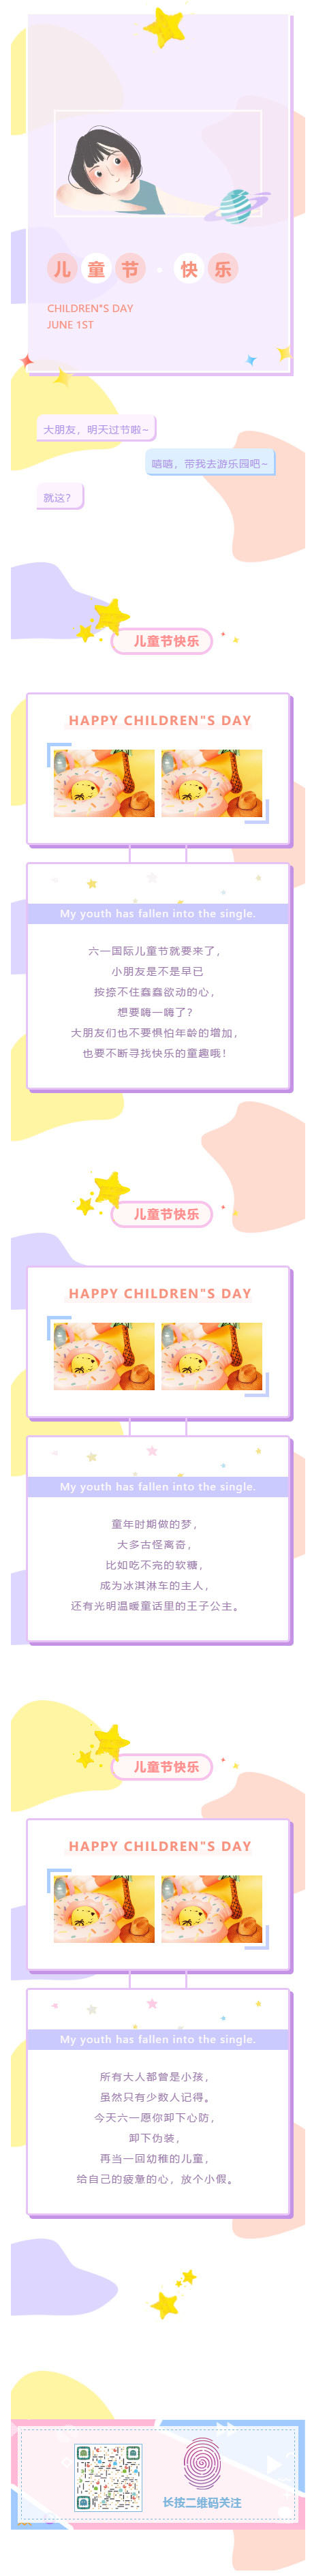 儿童节快乐可爱多彩风格动态图标微信推送图文模板推文素材